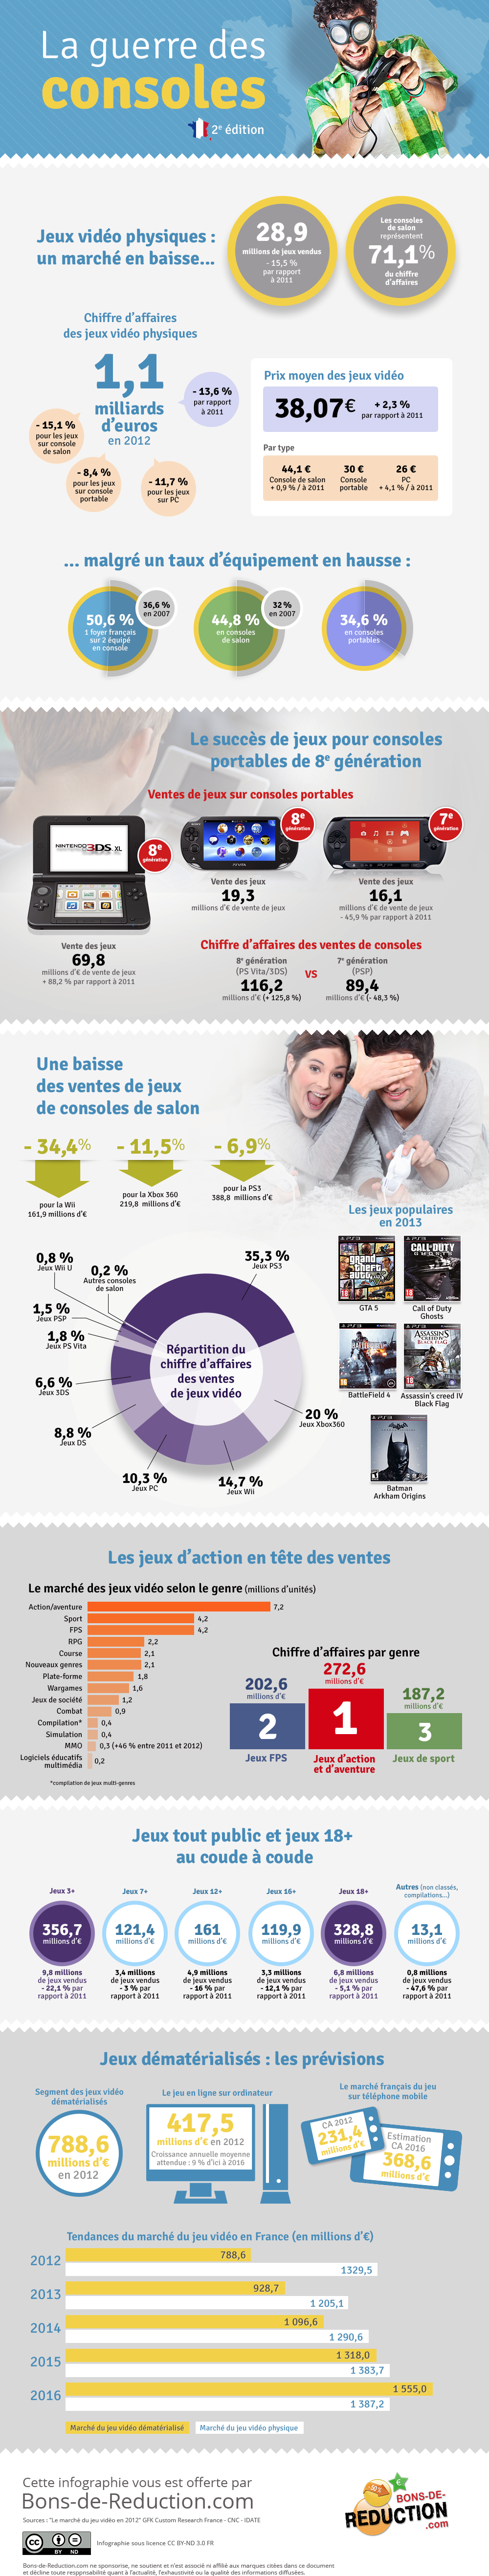  En France, depuis quelques années, le marché du jeu vidéo est en baisse, mais un rebond est attendu sur ce secteur avec la sortie des deux nouvelles consoles de Microsoft et Sony : la Xbox One et la PlayStation 4.